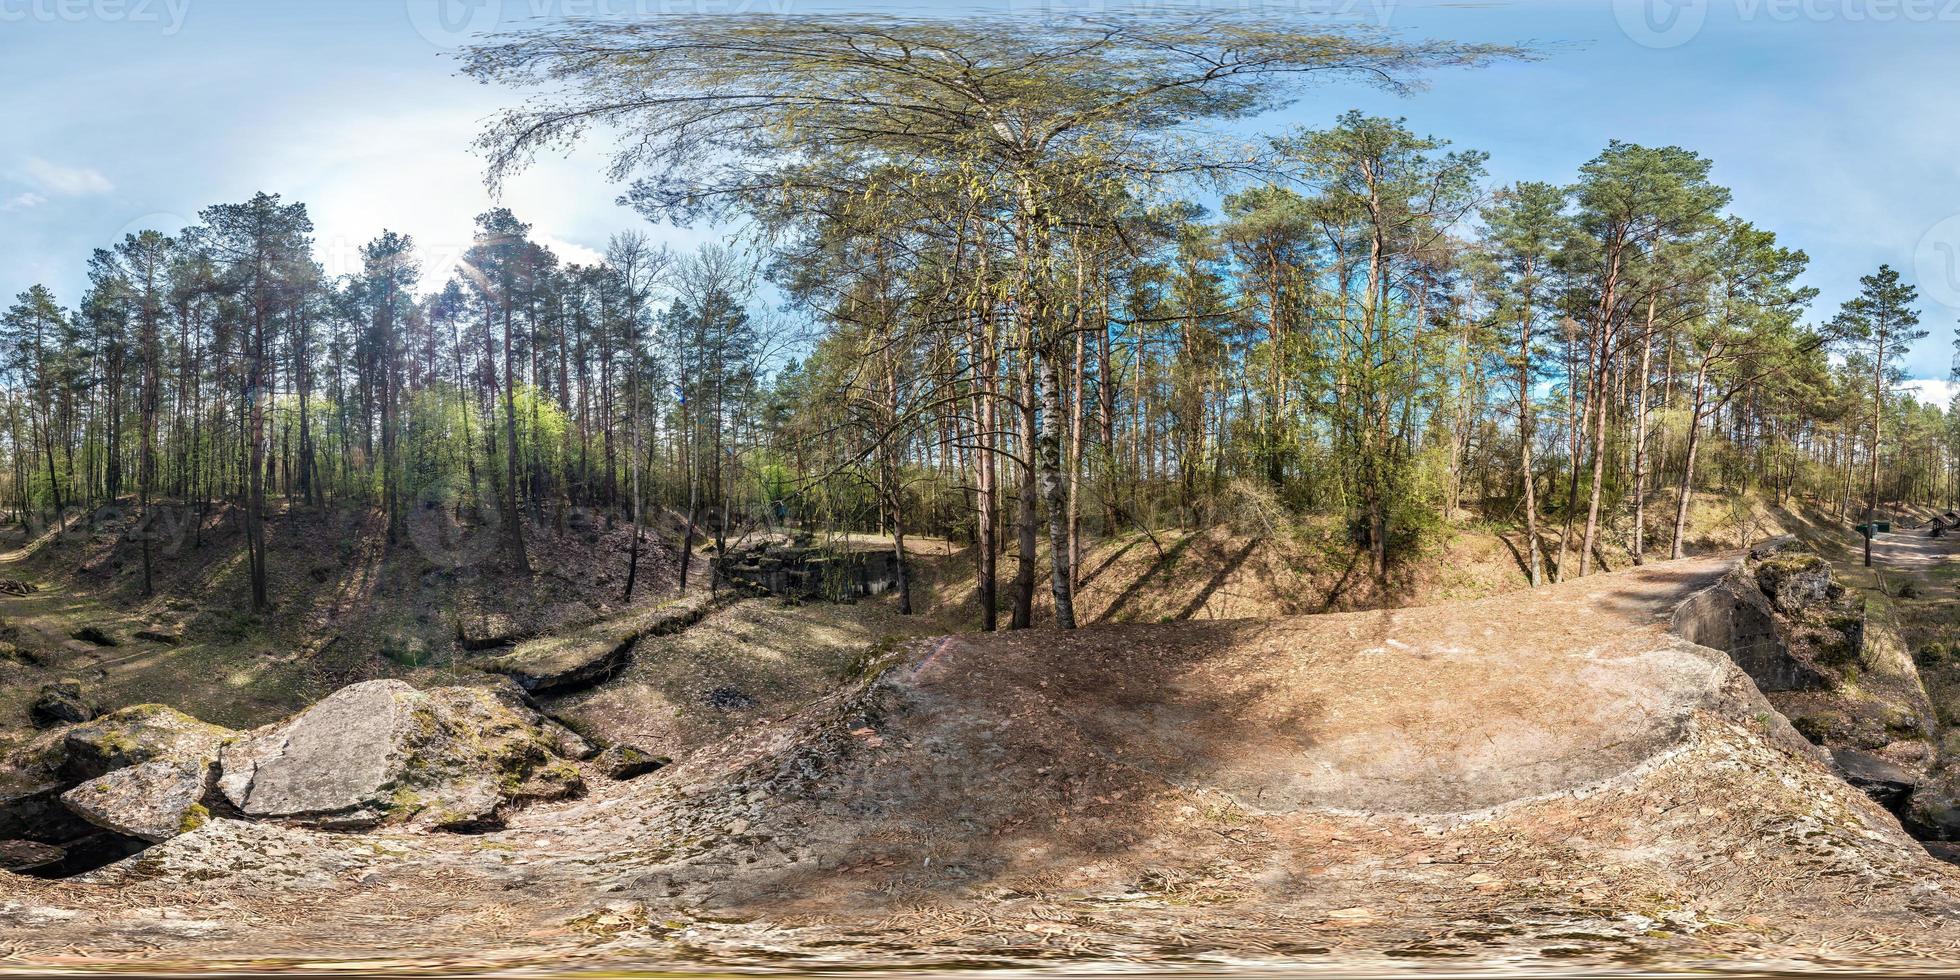 panorama esférico completo sin costuras vista de ángulo de 360 grados arruinada fortaleza militar abandonada de la primera guerra mundial en bosque de pinos en proyección equirectangular, contenido vr ar foto